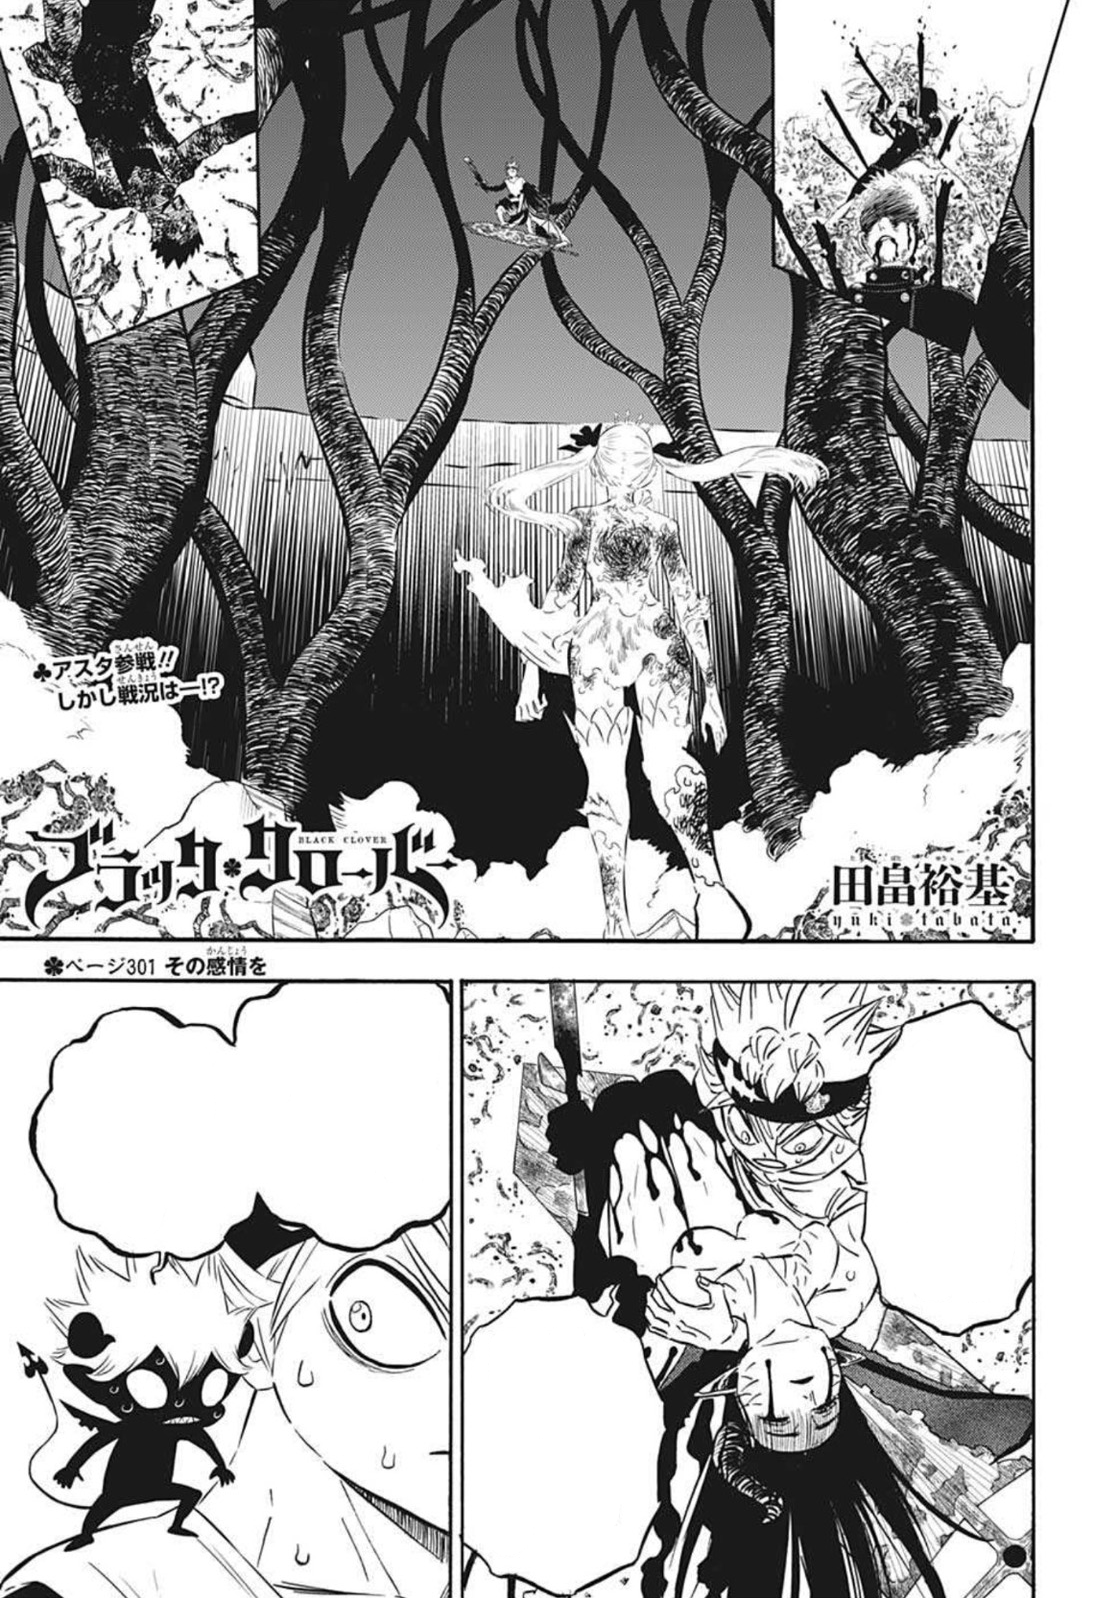 Asta Schwarzklee - anime  Black clover anime, Black clover manga, Anime